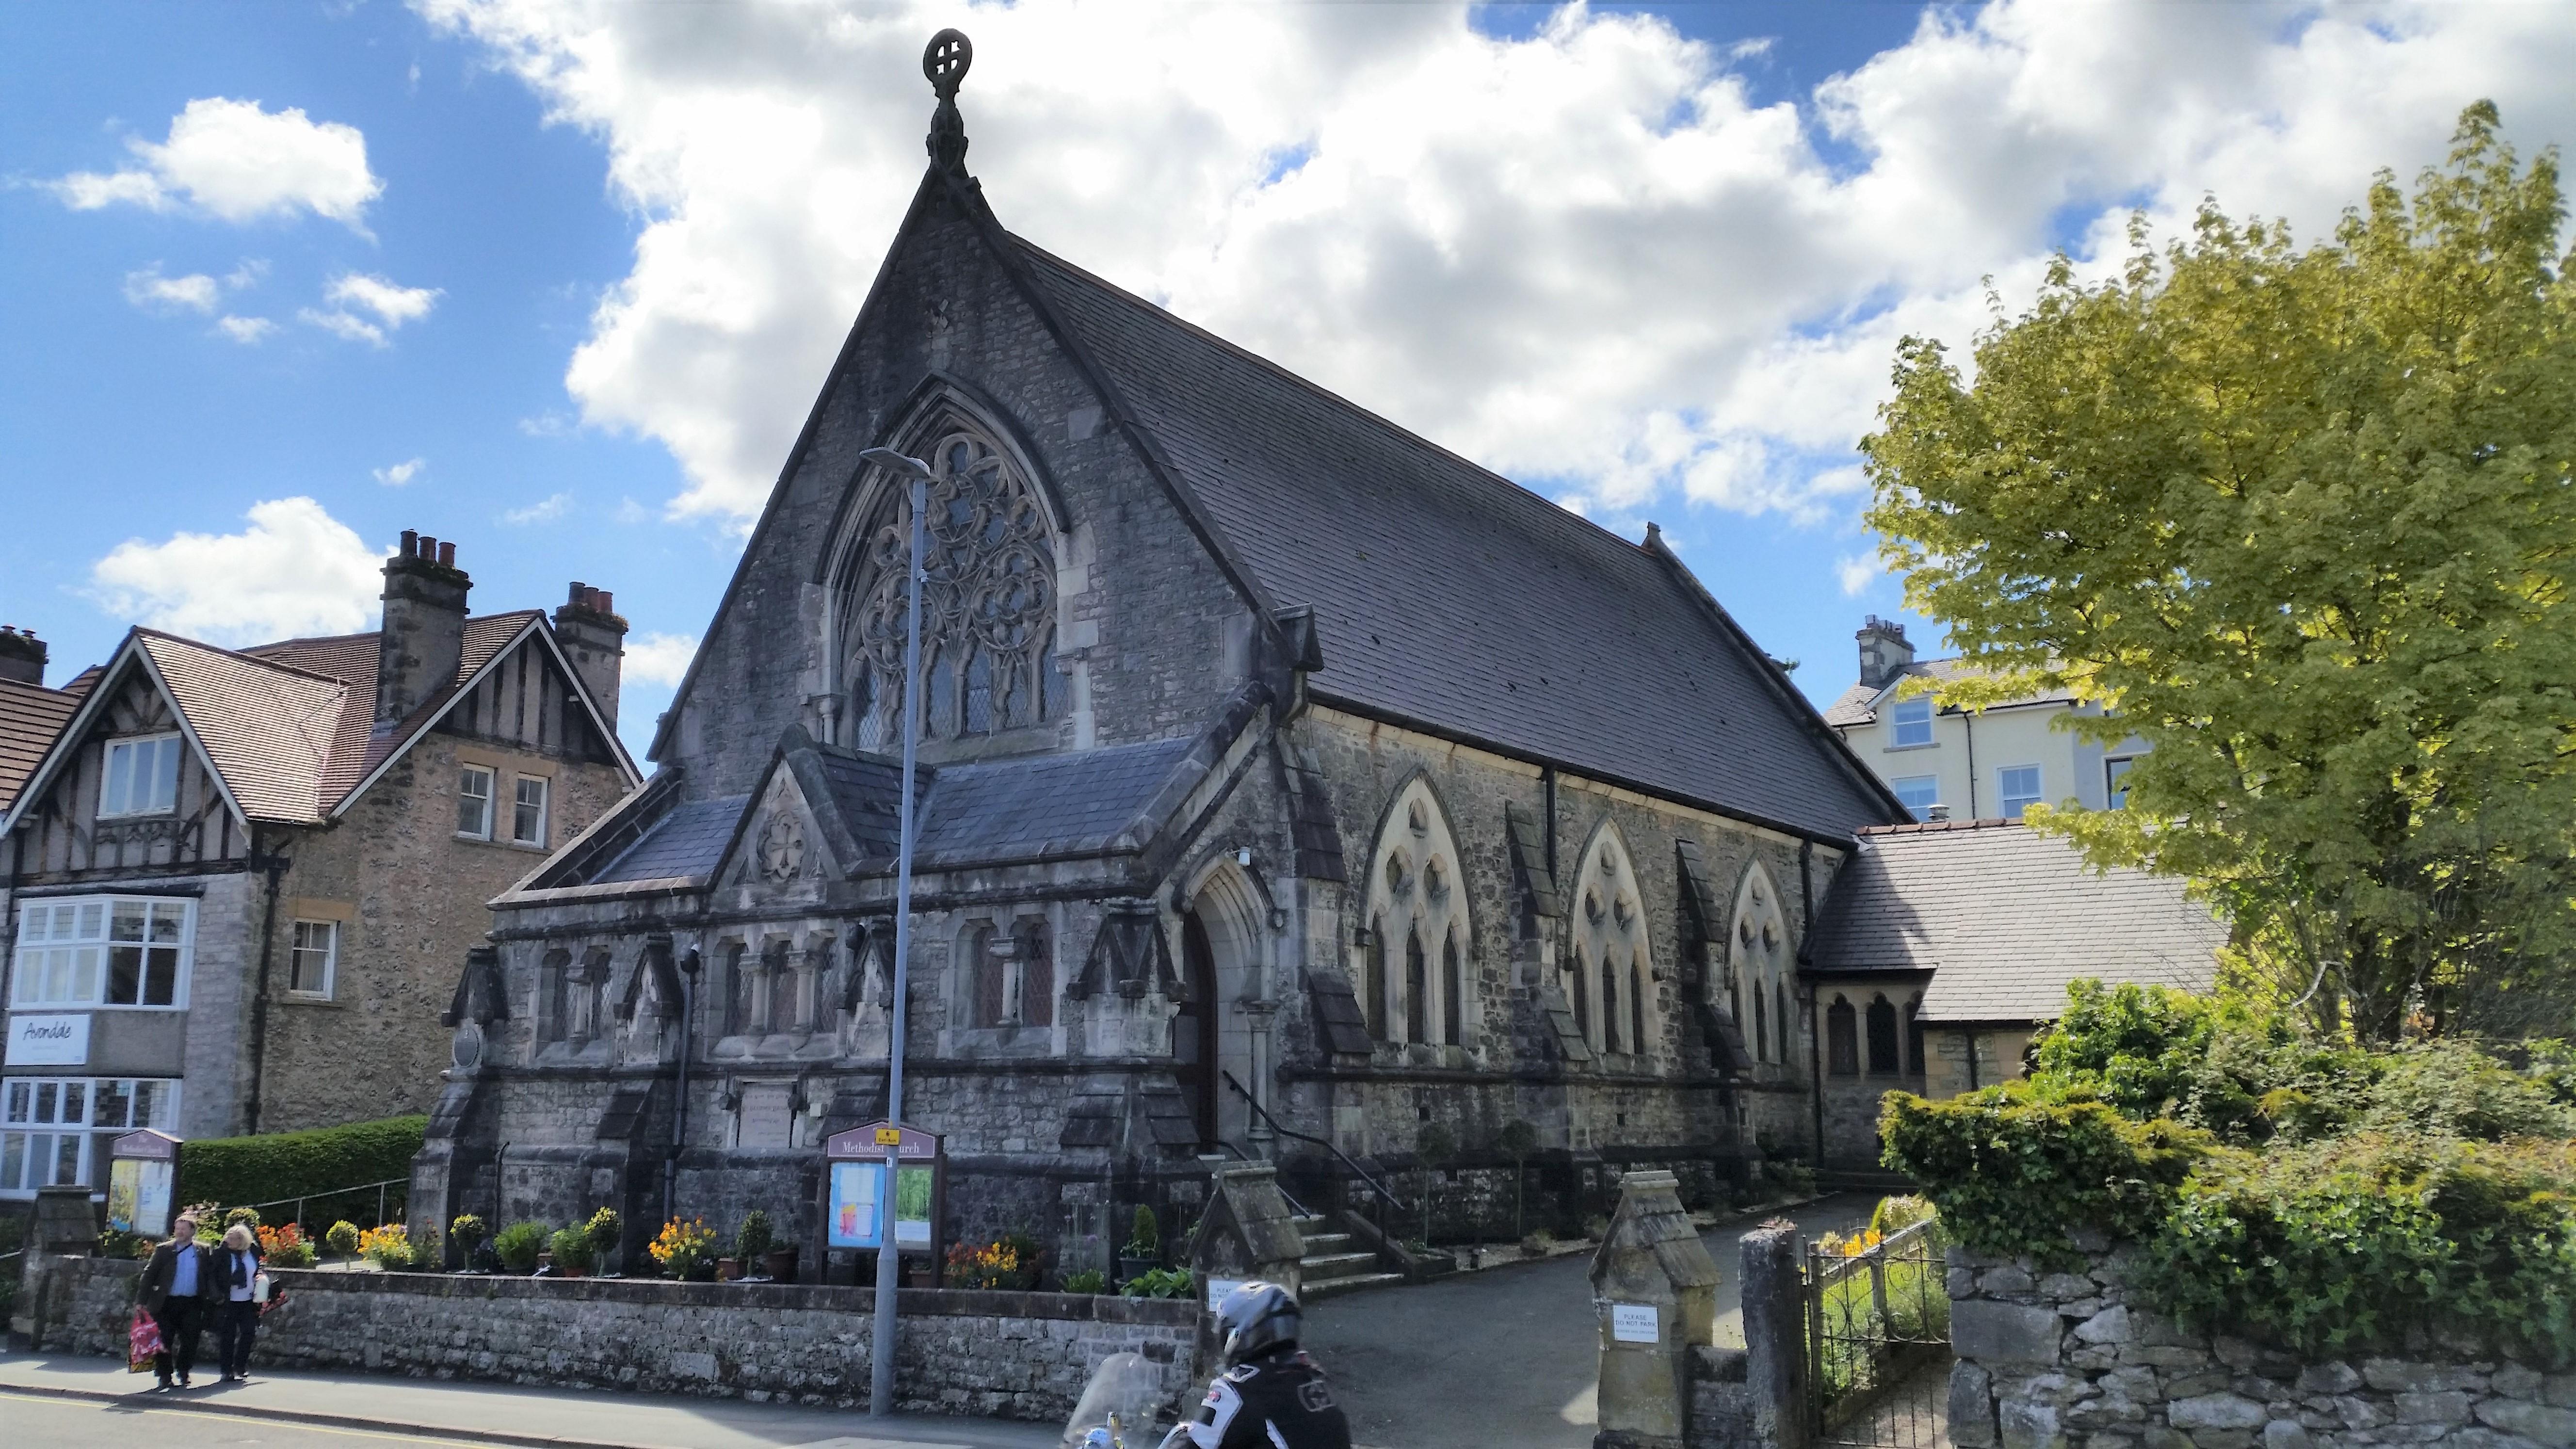 Grange-over-Sands Methodist Church in Cumbria